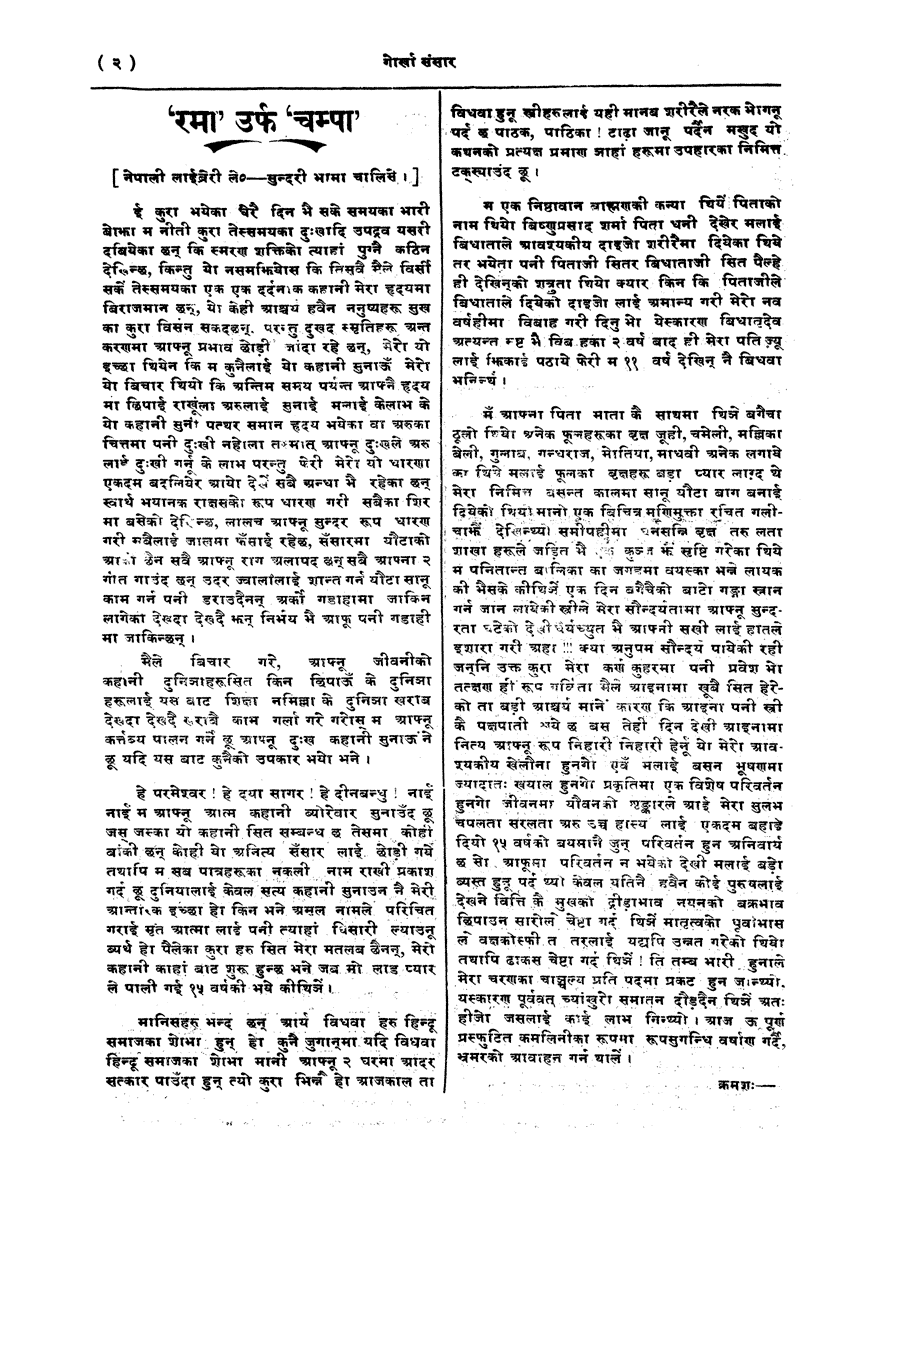 Gorkha Sansar, 28 Feb 1928, page 2